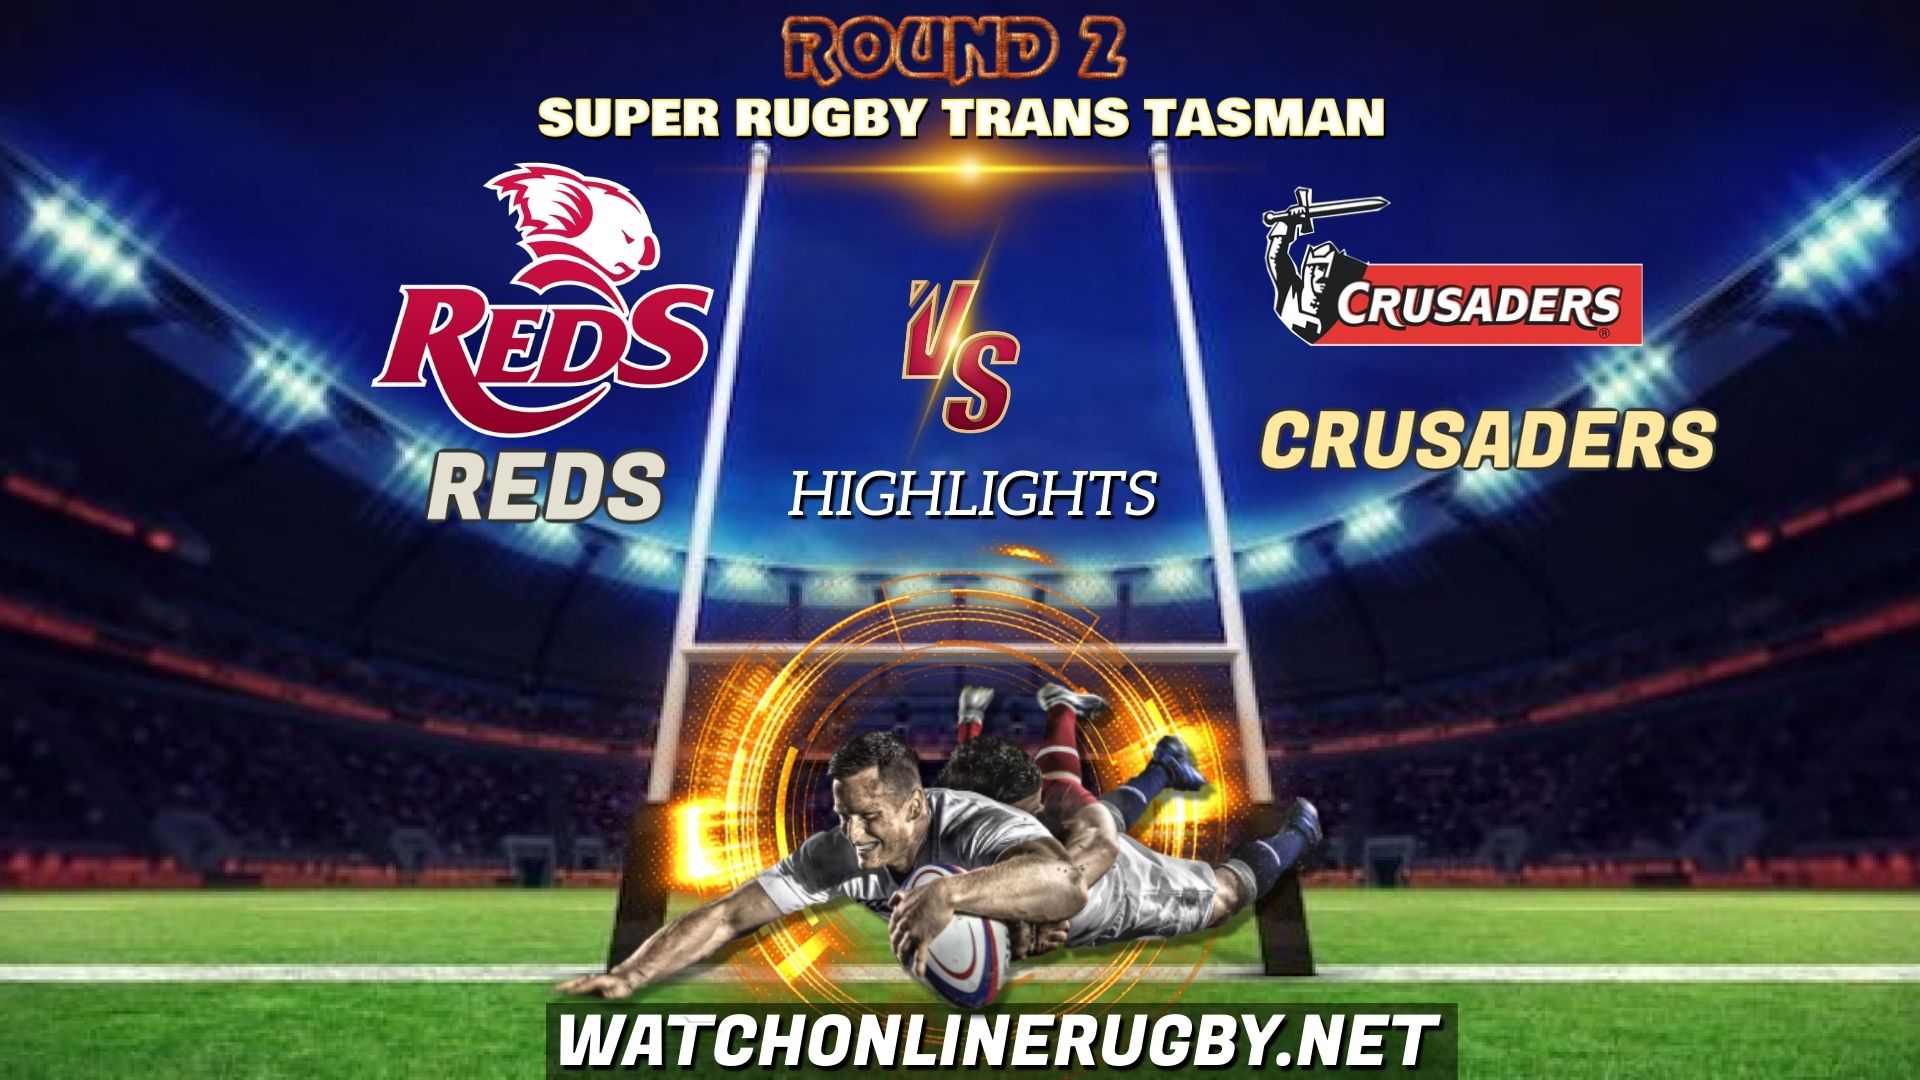 Reds Vs Crusaders Super Rugby Trans Tasman 2021 RD 2